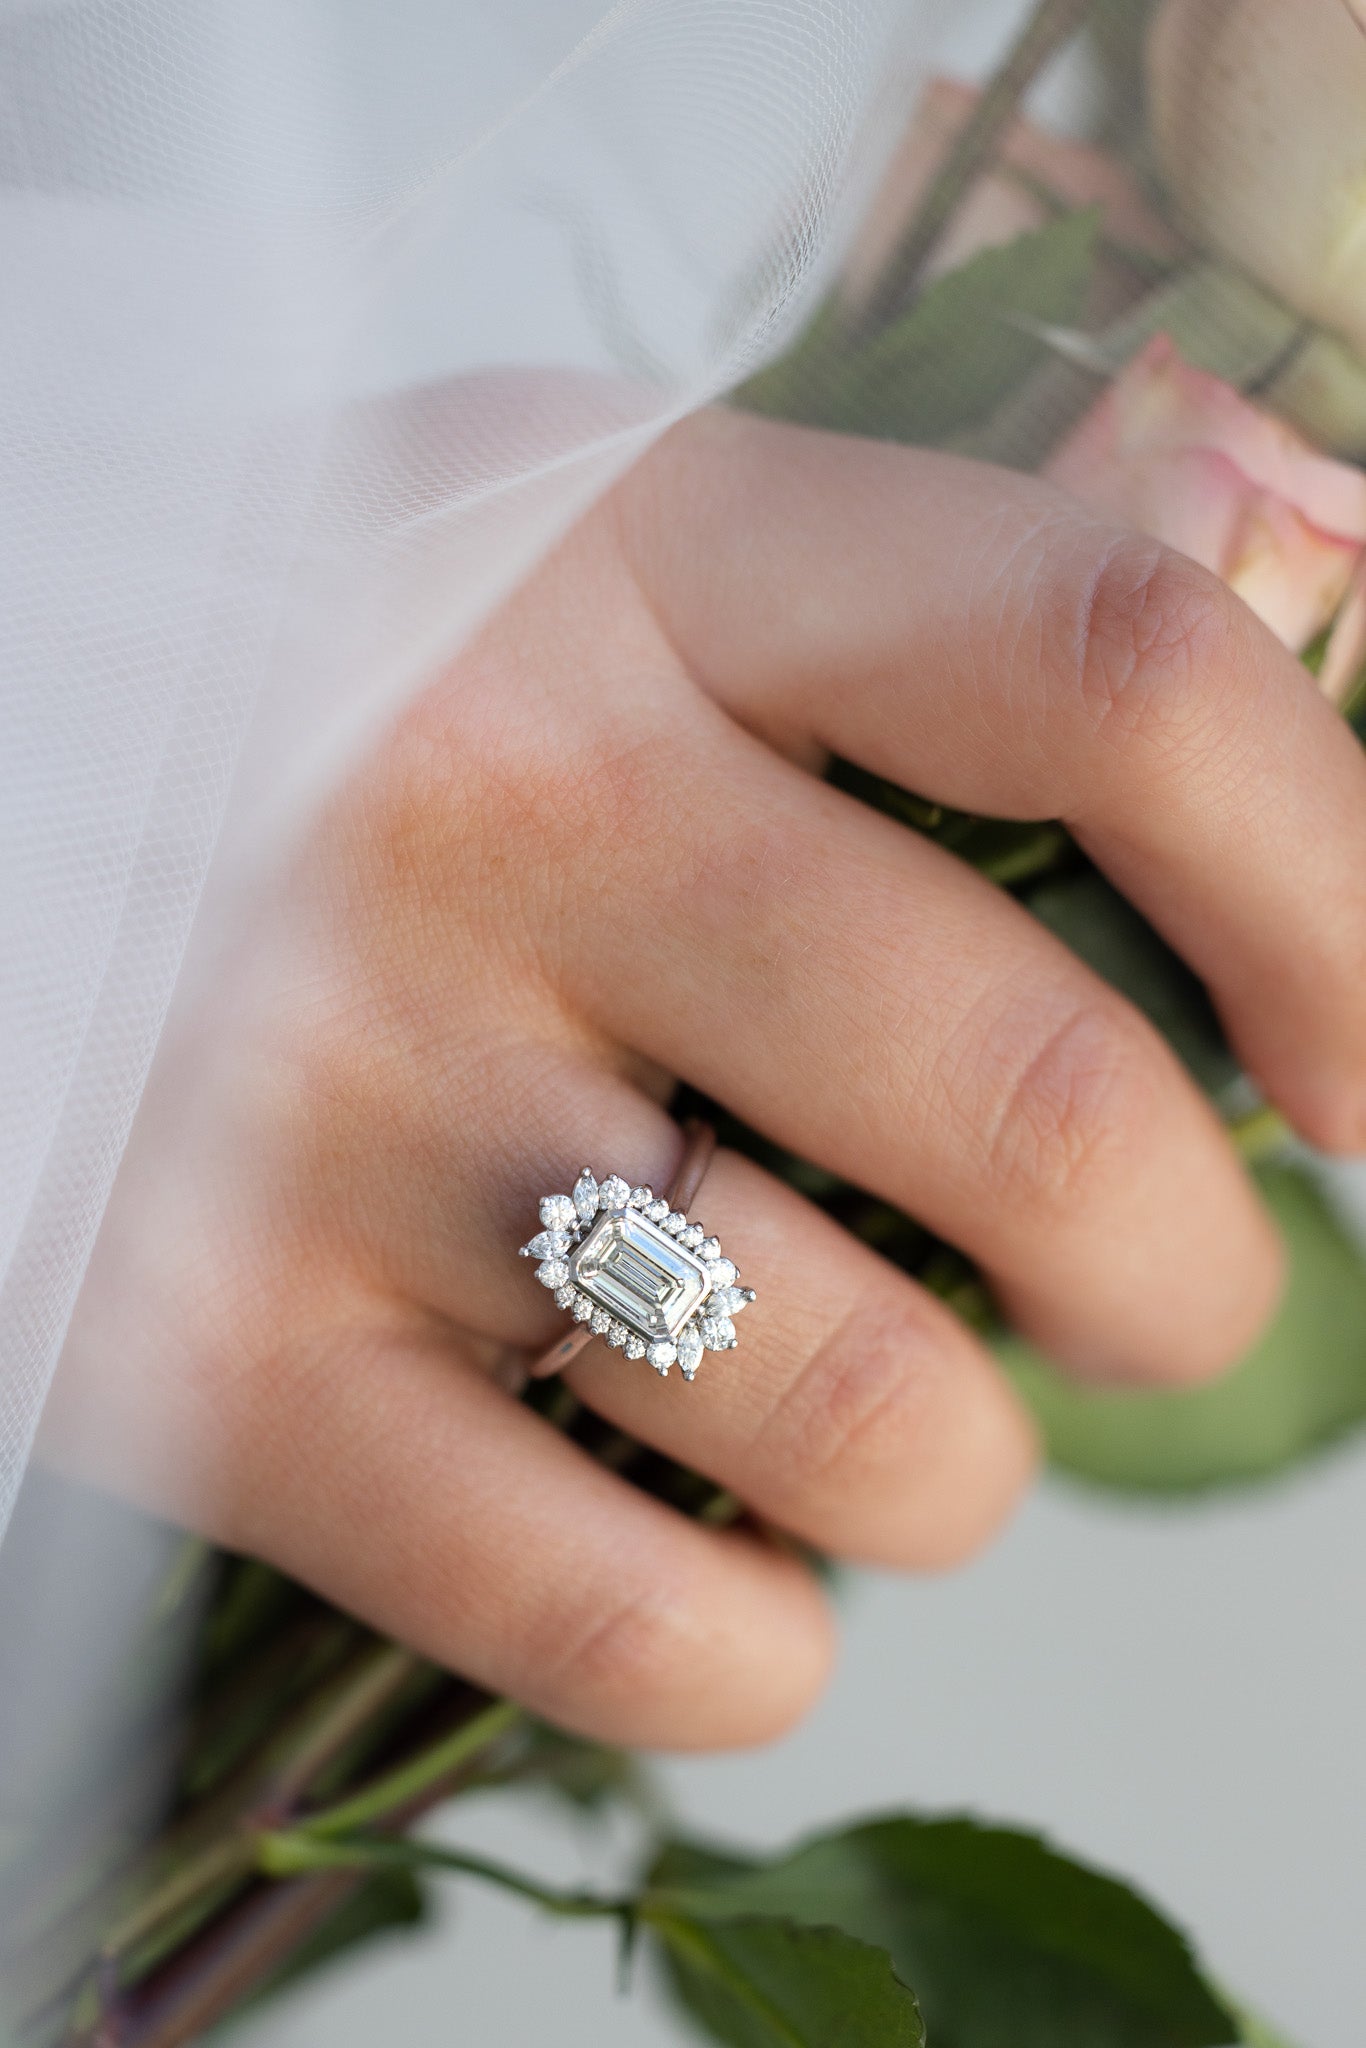 Bezel Set Halo Engagement Ring With Emerald Cut Diamond - GOODSTONE